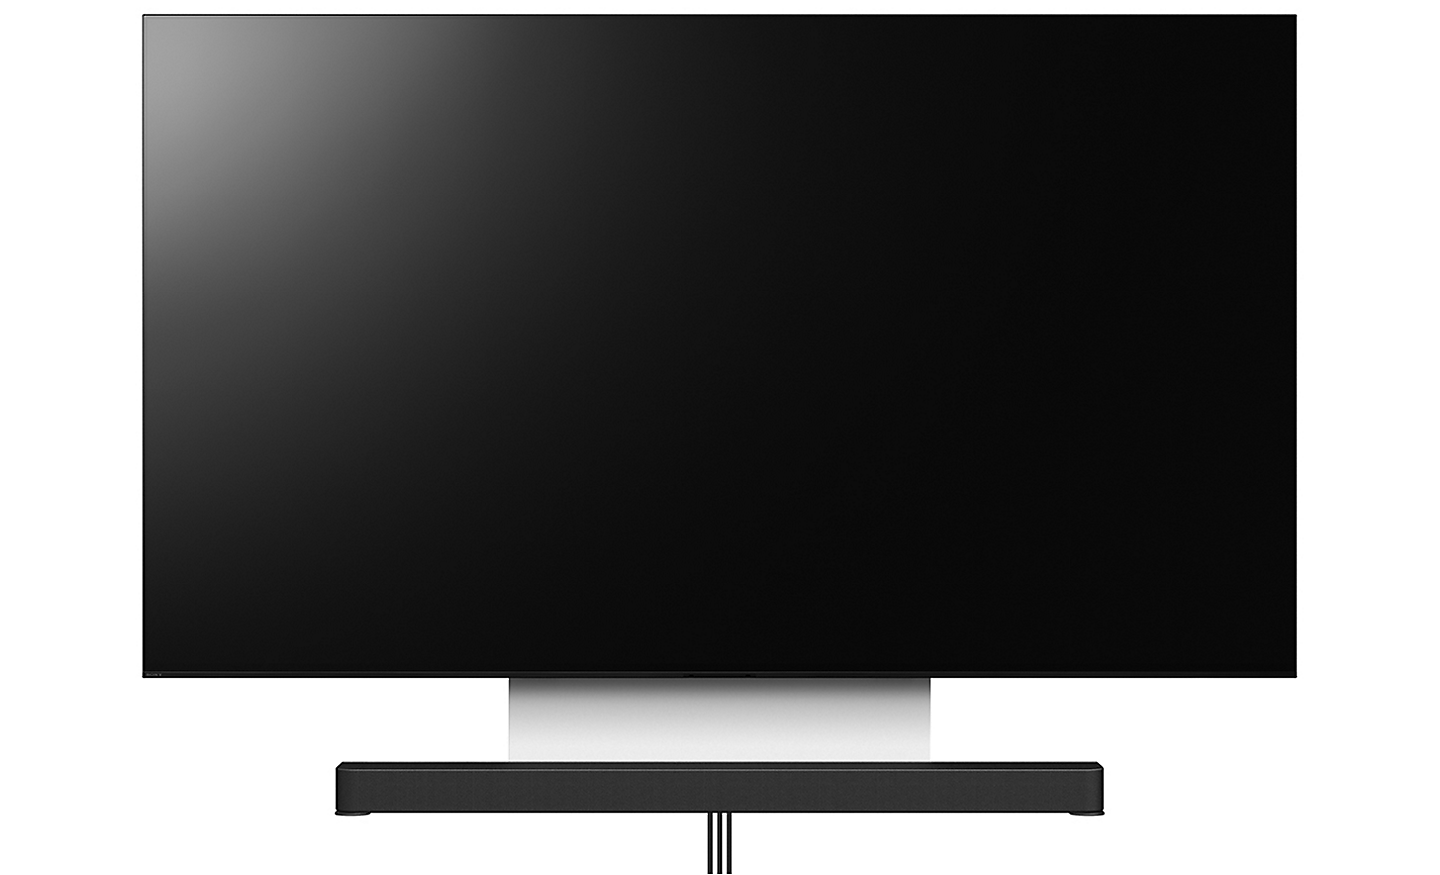 מבט קדמי על טלוויזיה ומקרן קול המחוברים באמצעות תושבת למתקן תלייה, כשהכבלים מוסתרים